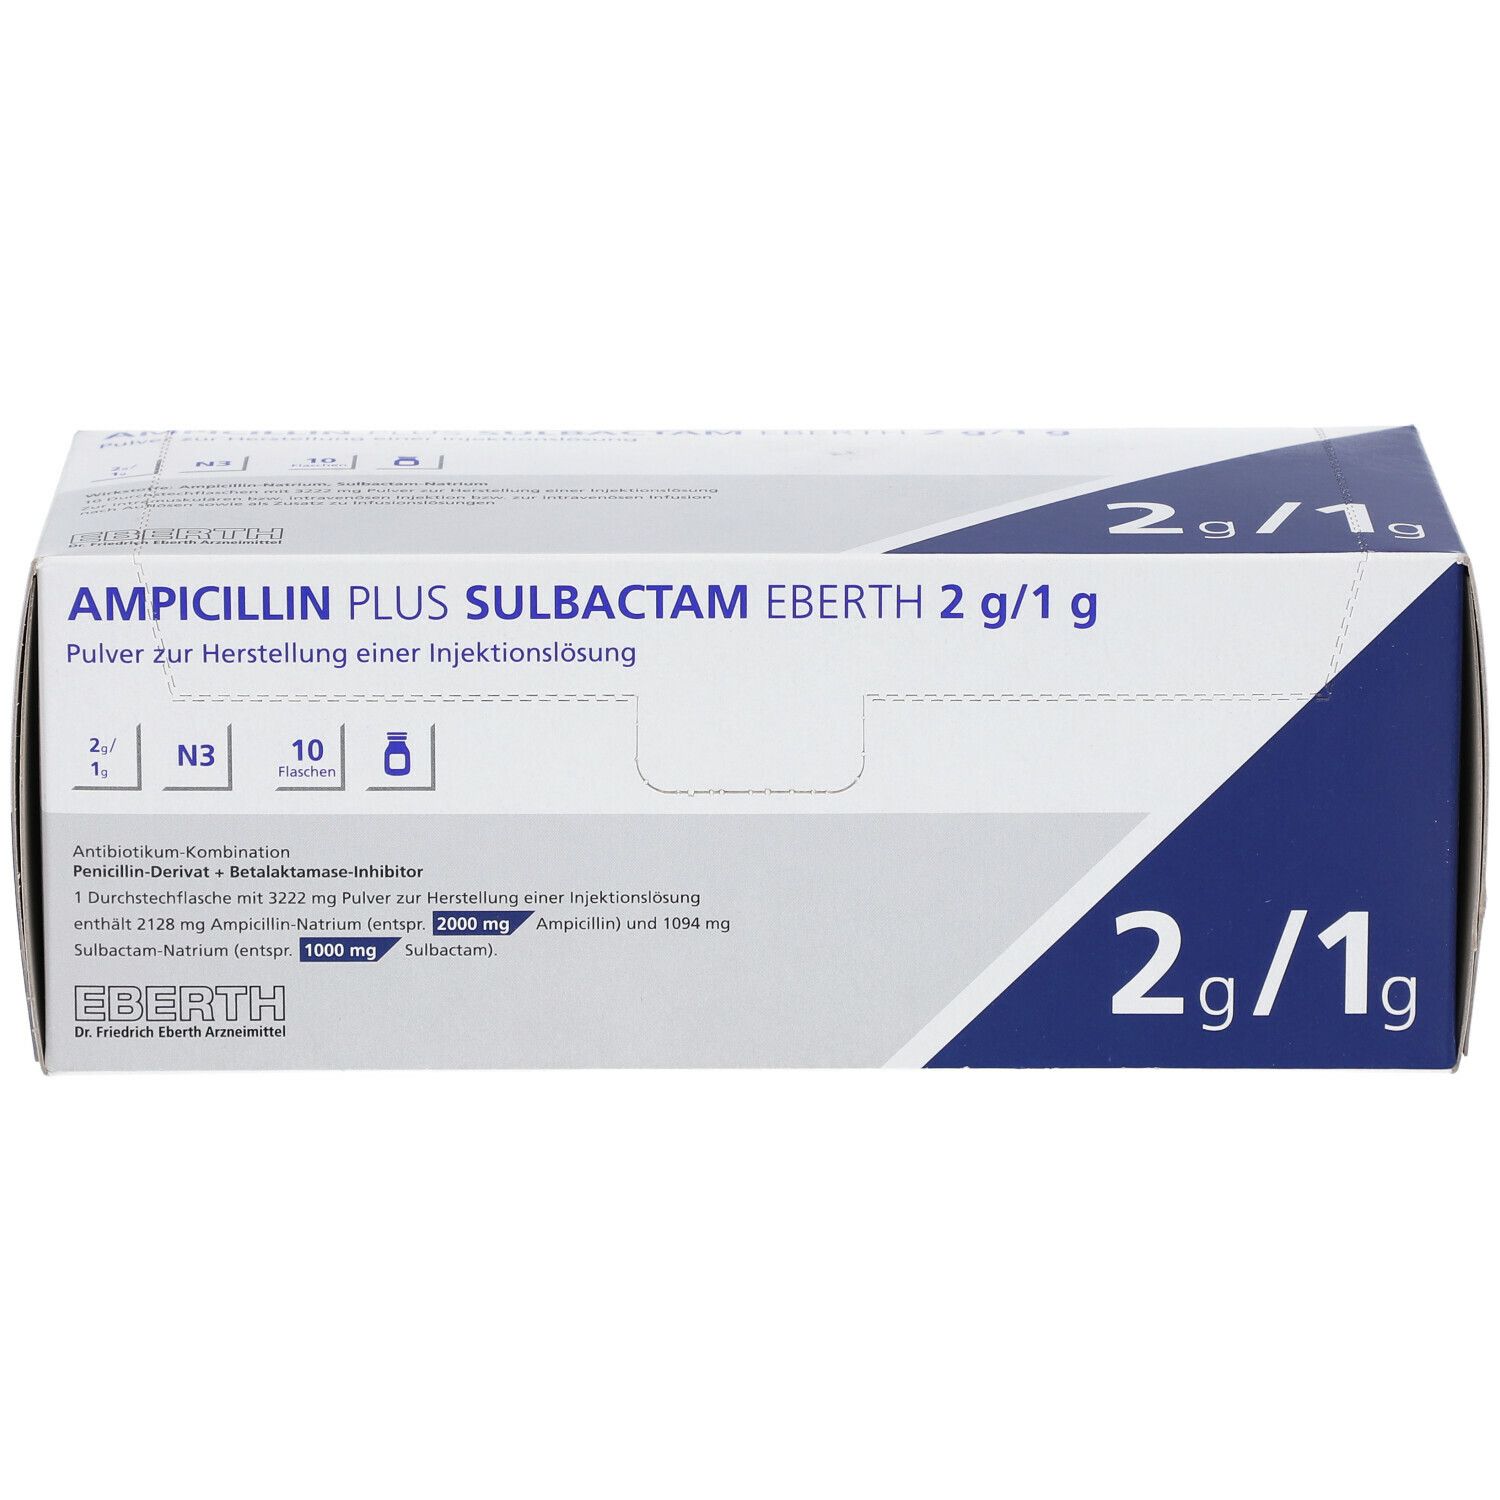 Ampicillin Plus Sulbactam Eberth 2 g/1 g